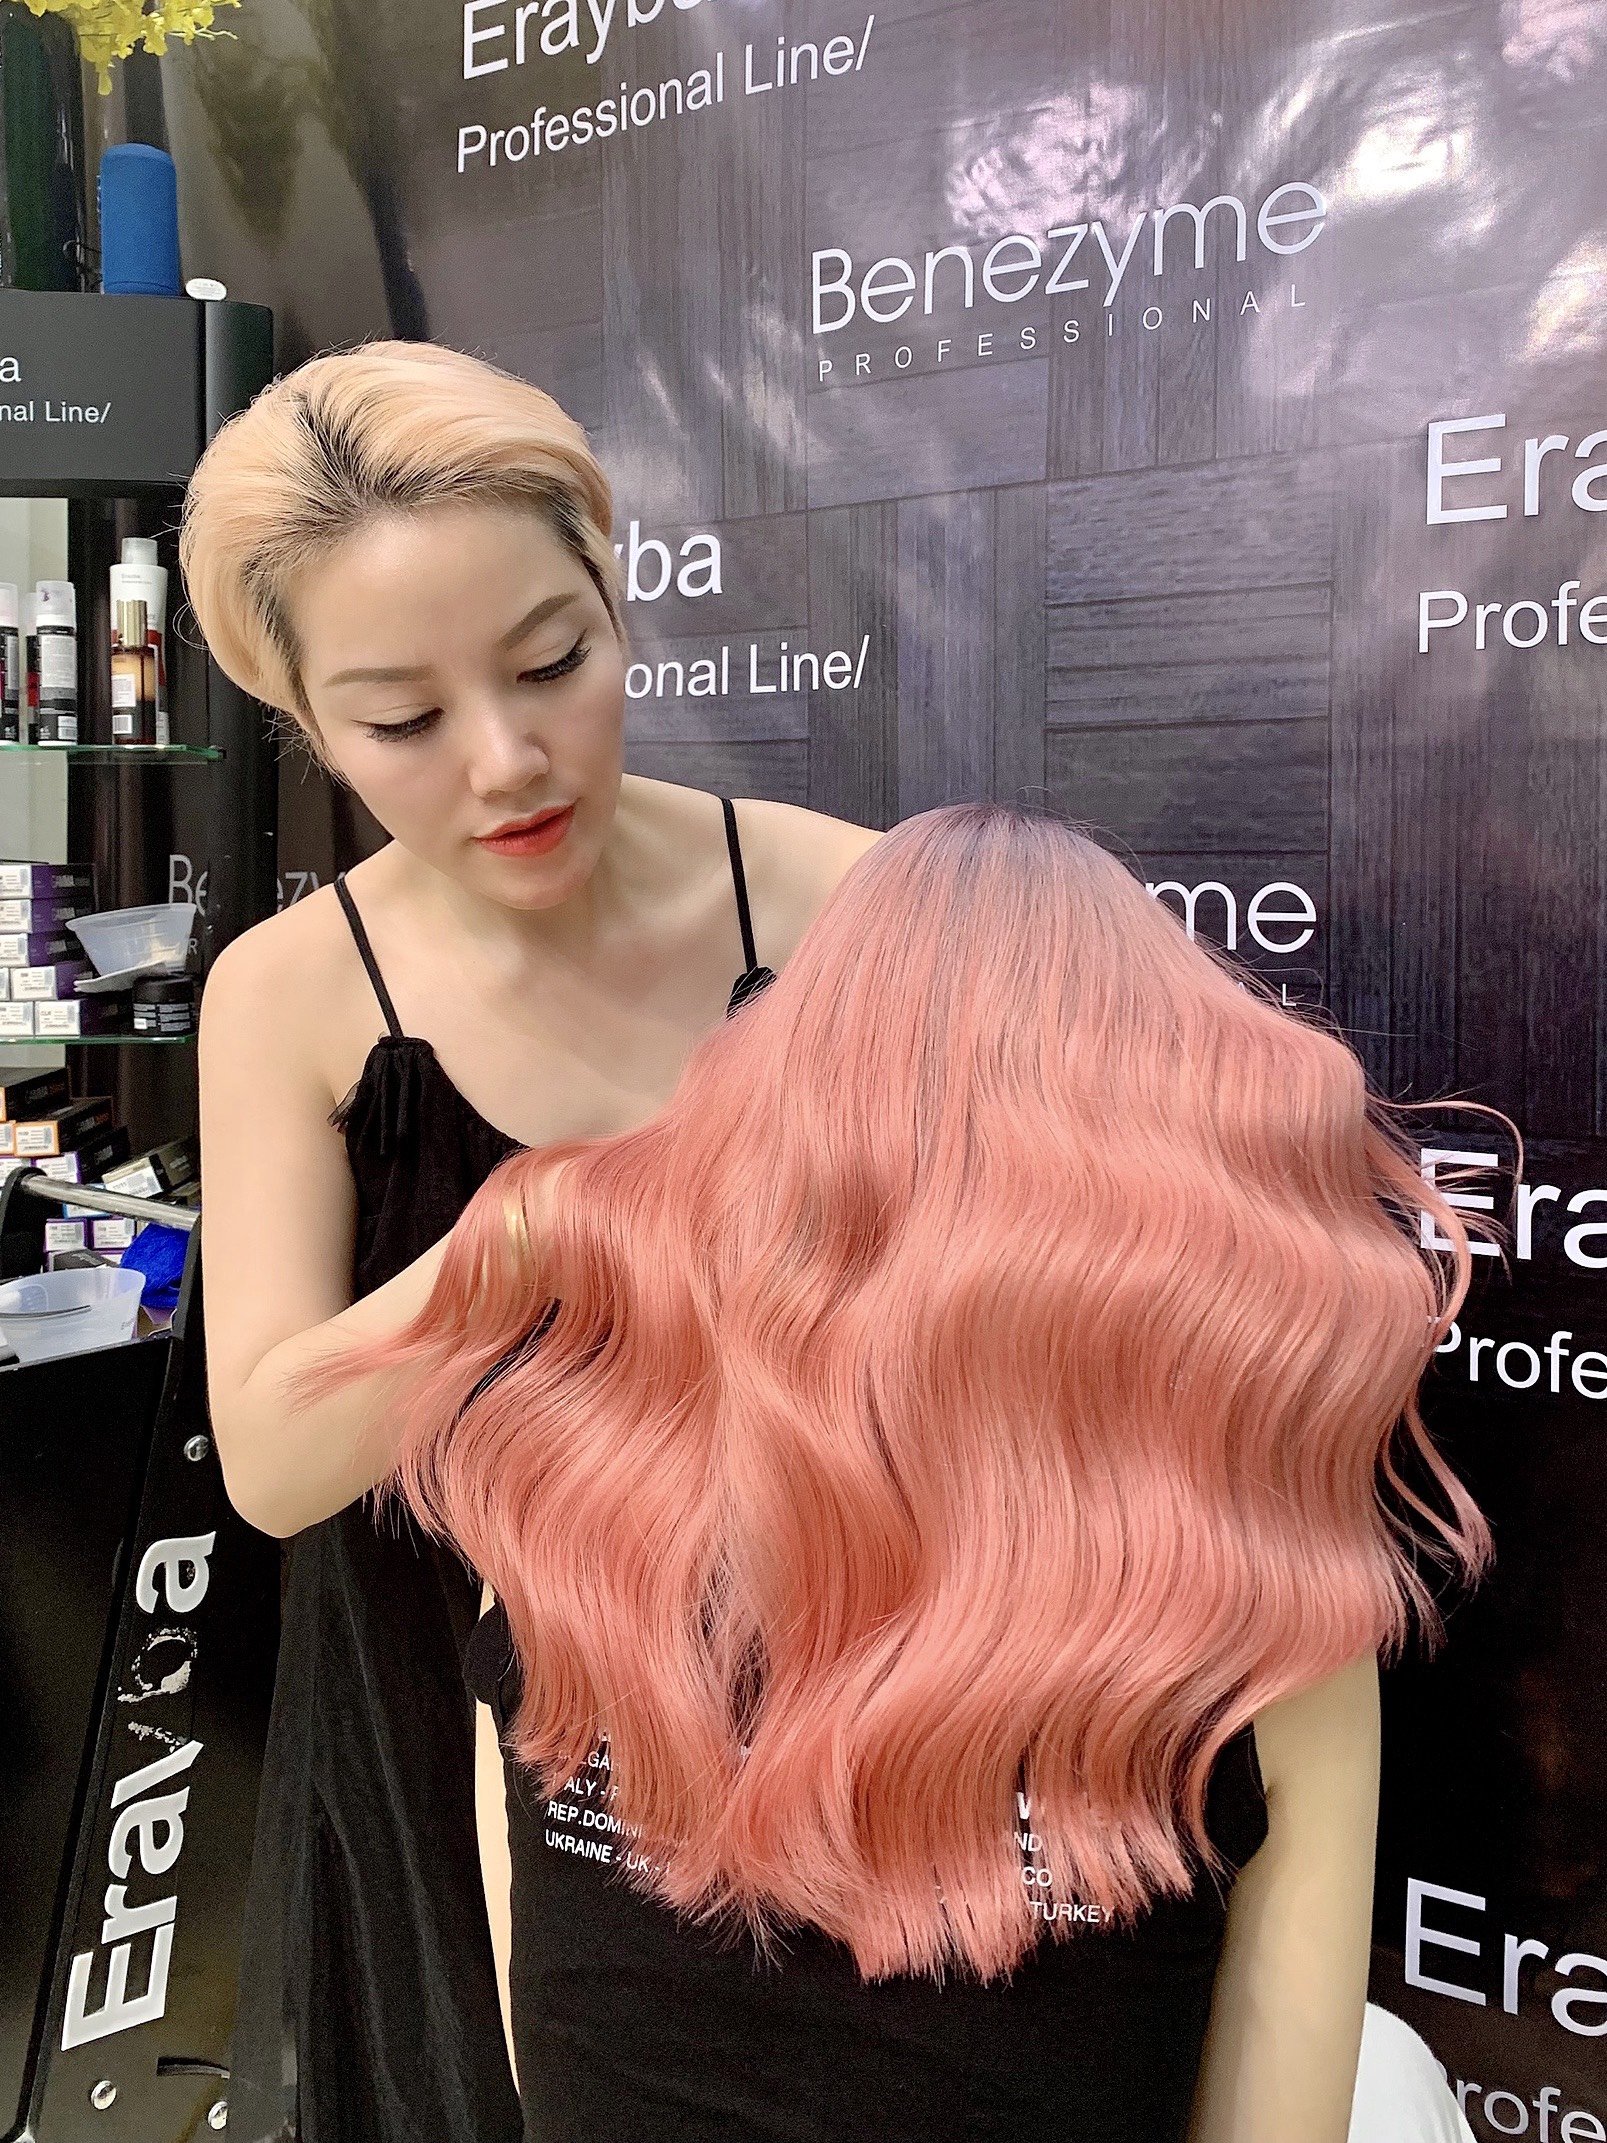 Chuyên gia tạo mẫu tóc Tuấn Đặng và 20 năm trong ngành tóc Việt  CHUYÊN  TRANG BÁO ĐIỆN TỬ HỘI NHẬP VĂN HÓA VÀ PHÁT TRIỂN   httpshoinhapvanhoavaphattrienvn